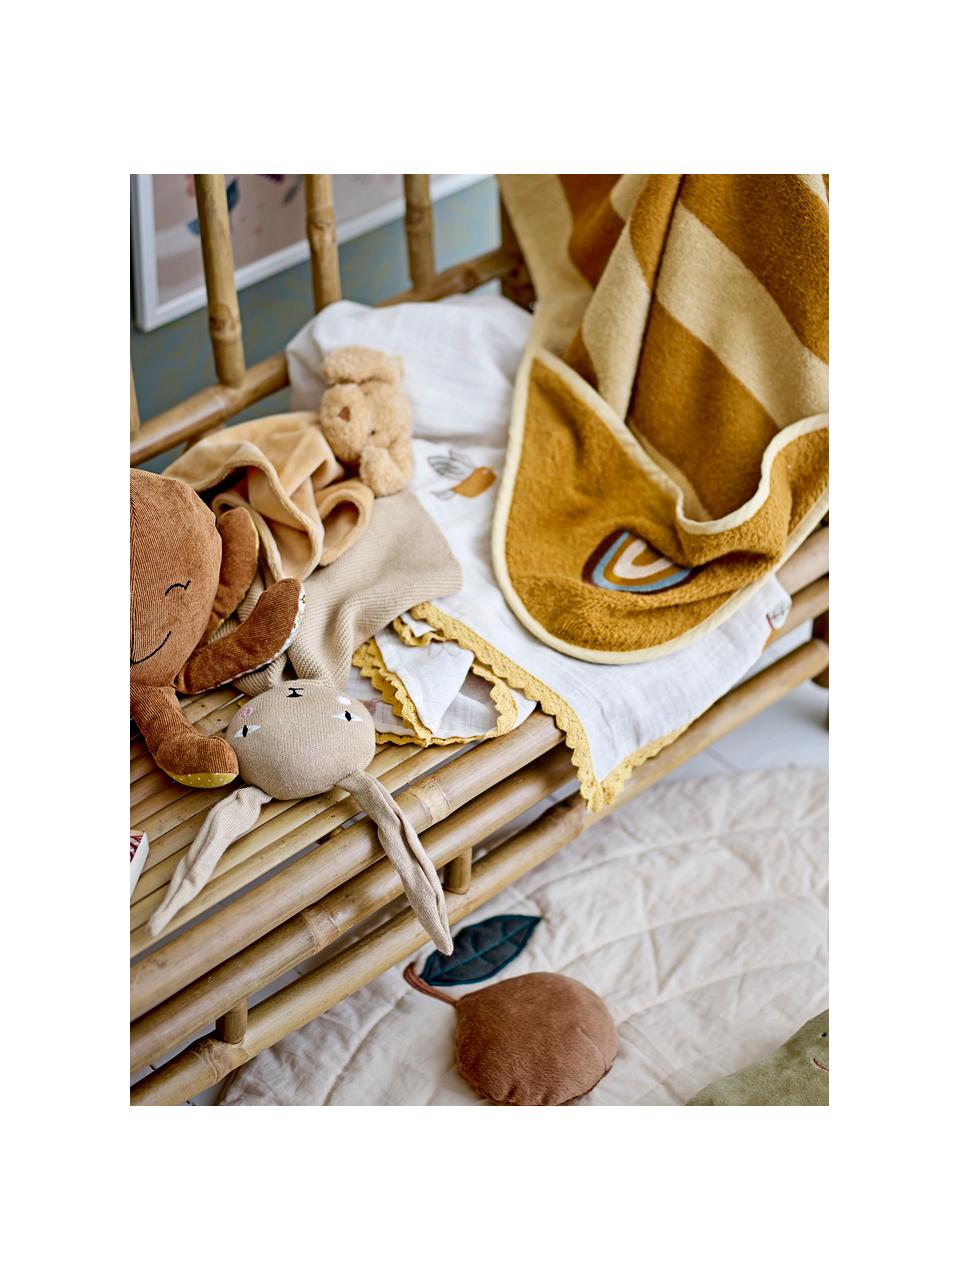 Leichte Baby-Decke Agnes, 80 % Baumwolle, 20 % Polyester, Weiß, Bunt, B 80 x L 100 cm